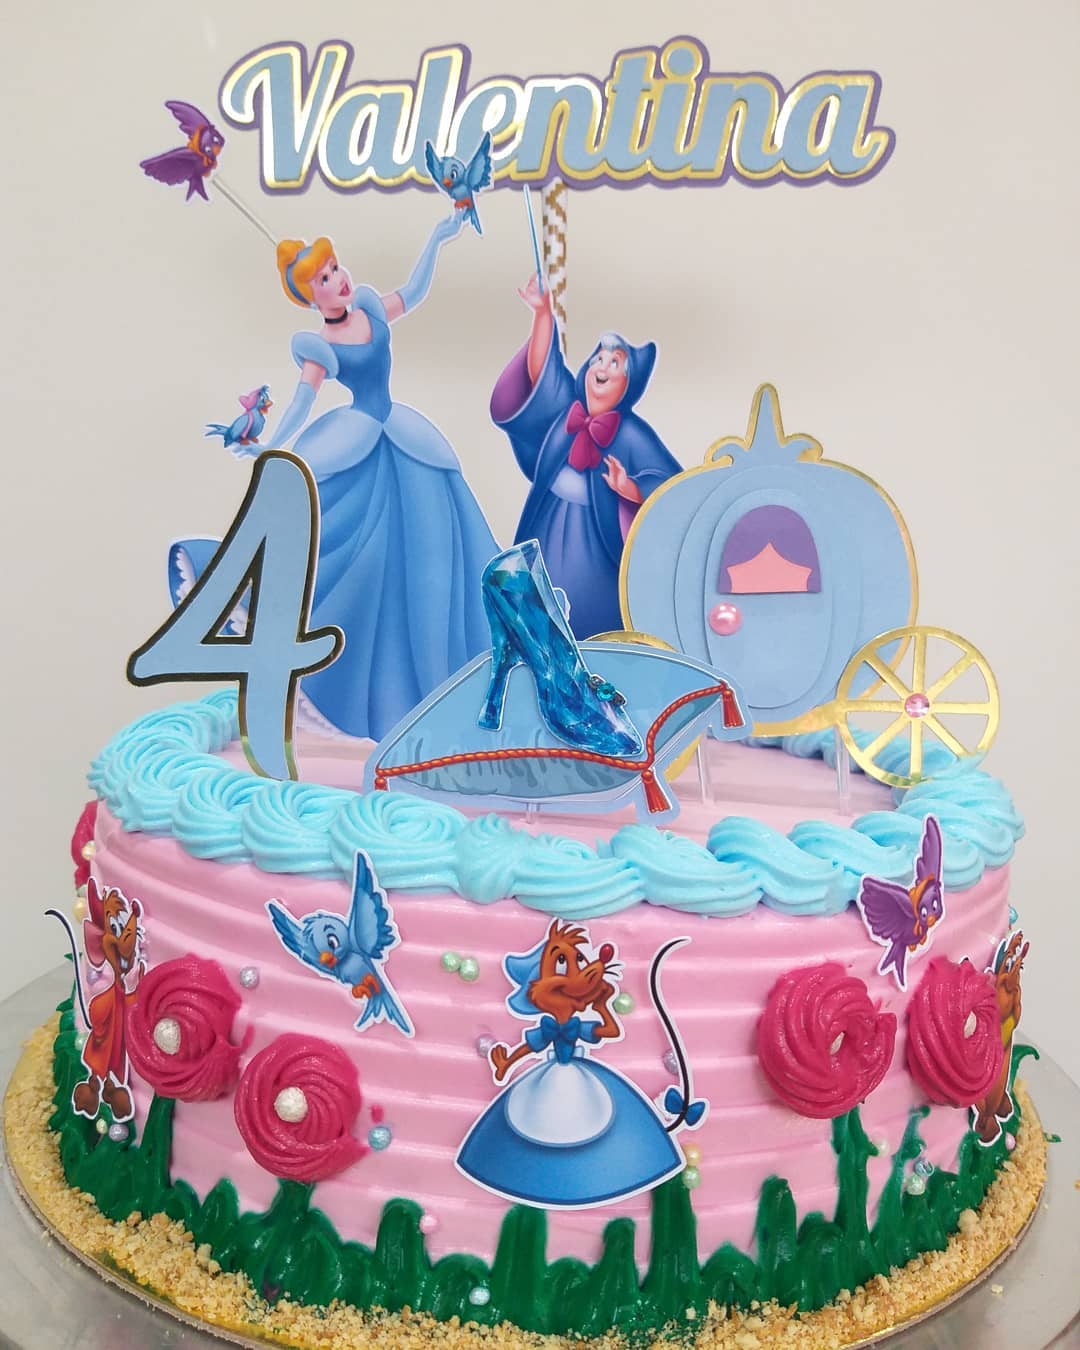 Decoração para bolo da Princesa Cinderela - 3 unidades por 9,95 €